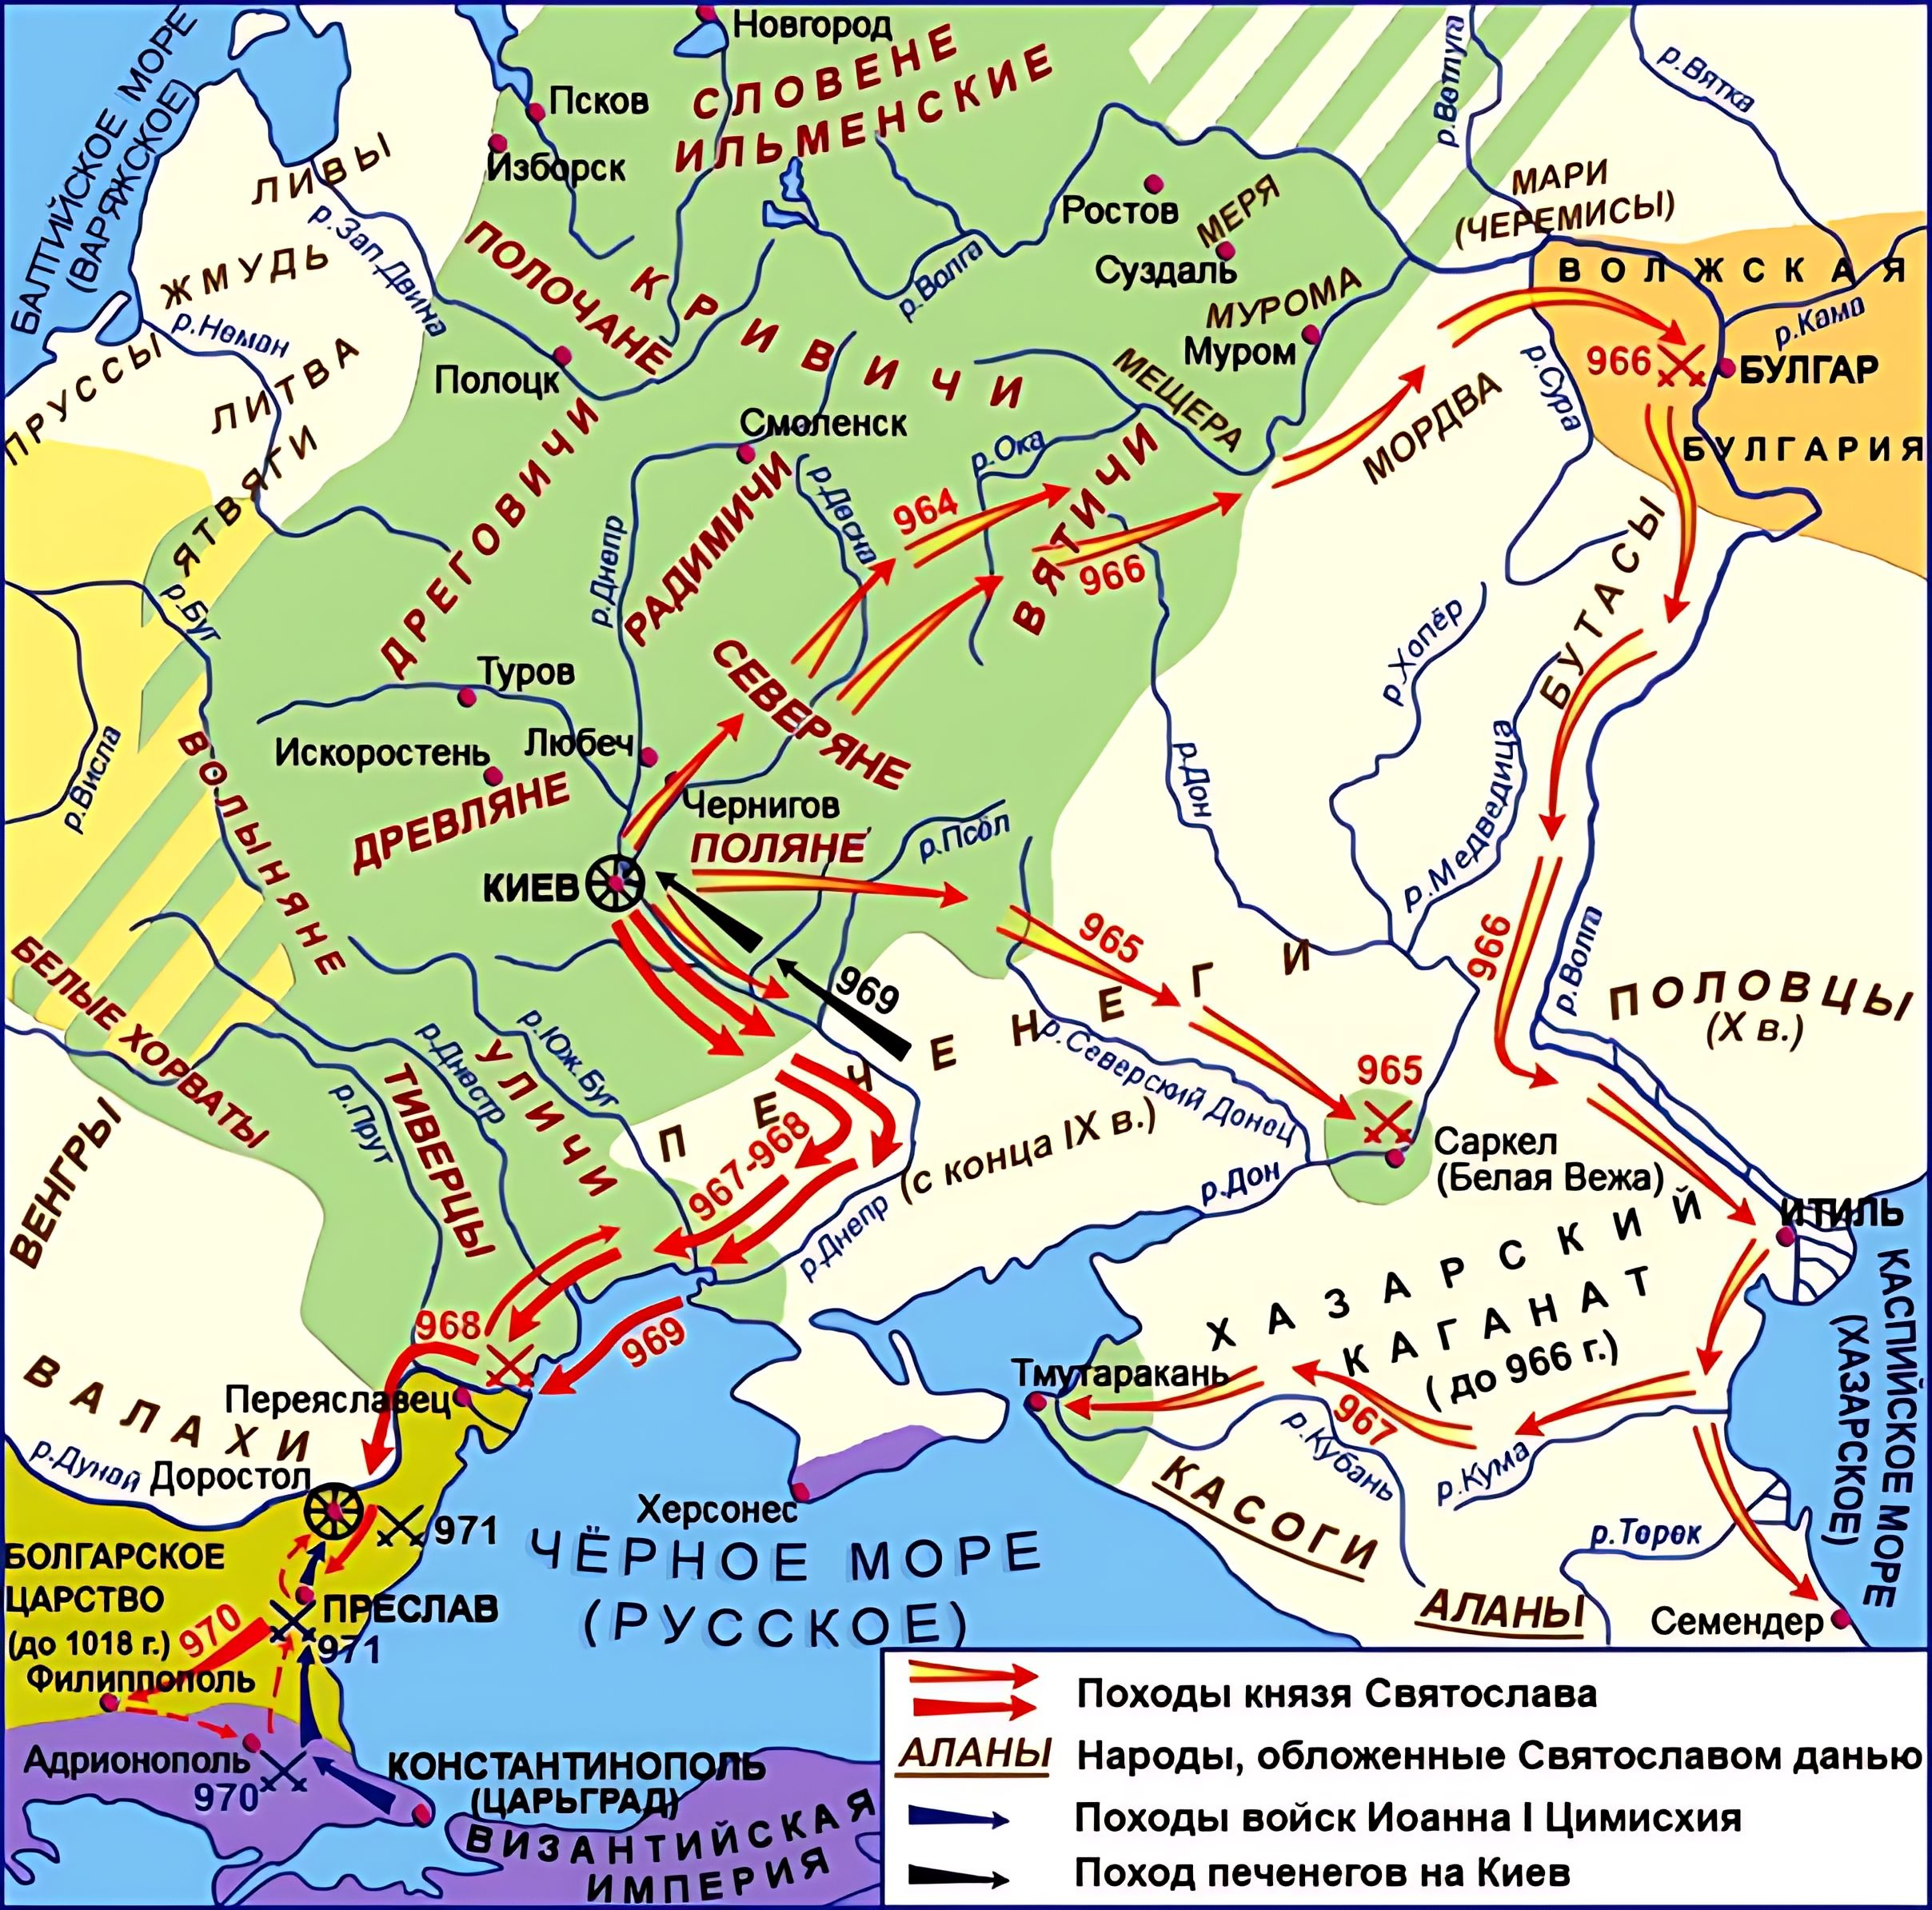 Карта восточных походов князя Святослава